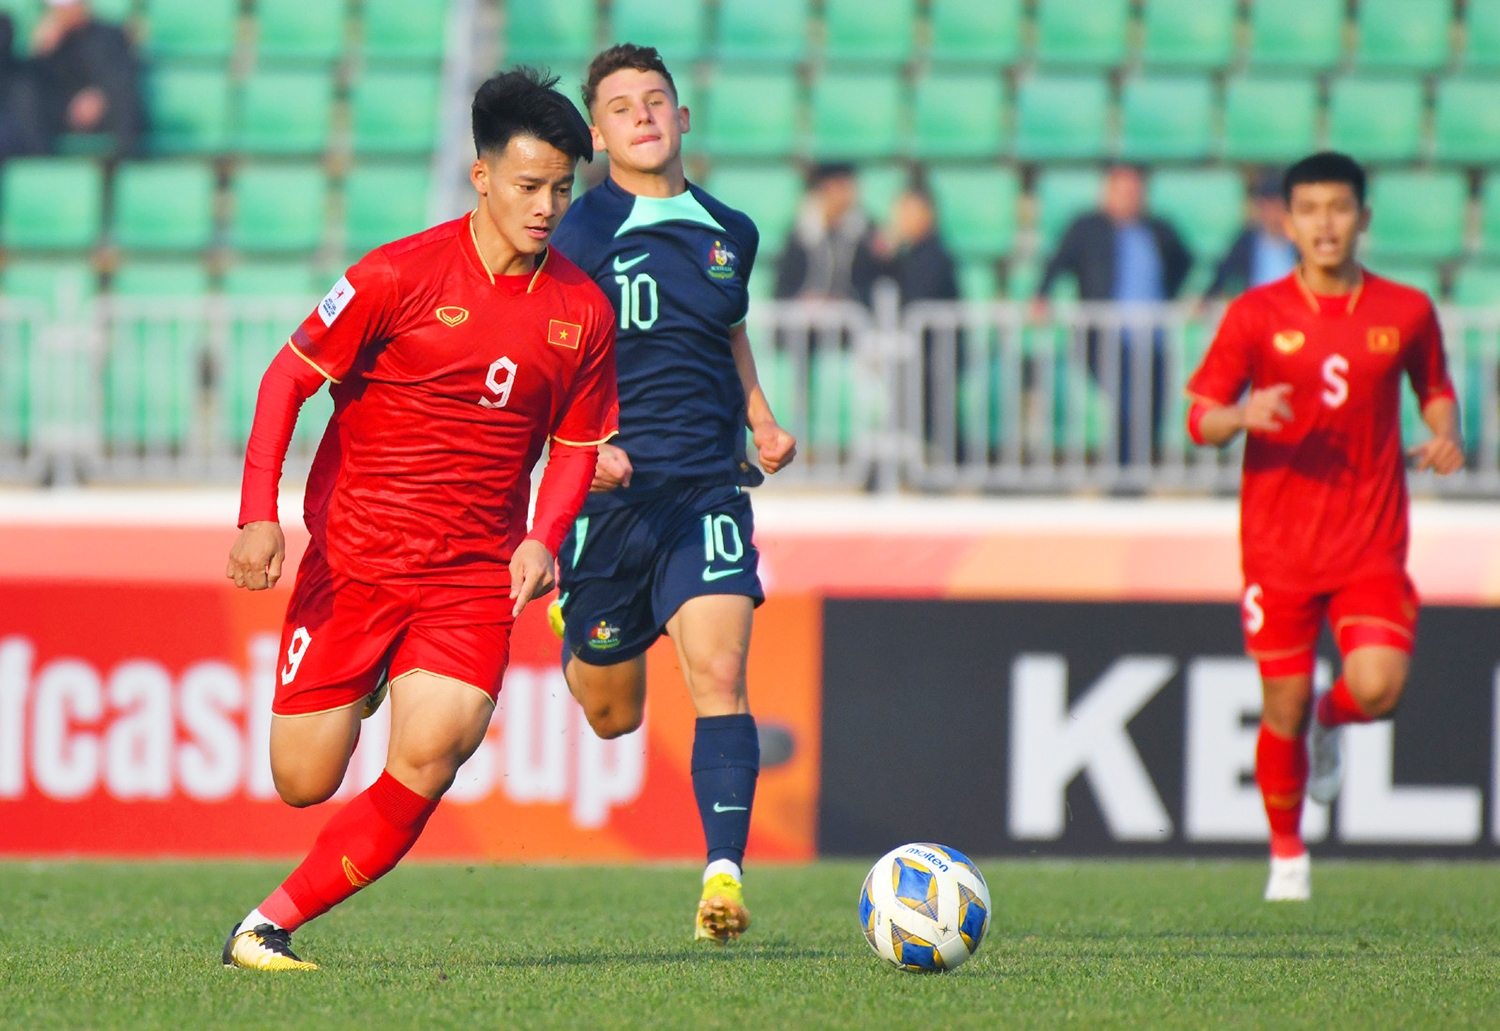 Màn thể hiện của U20 Việt Nam mang nhiều hy vọng cho bóng đá Việt Nam trong tương lai